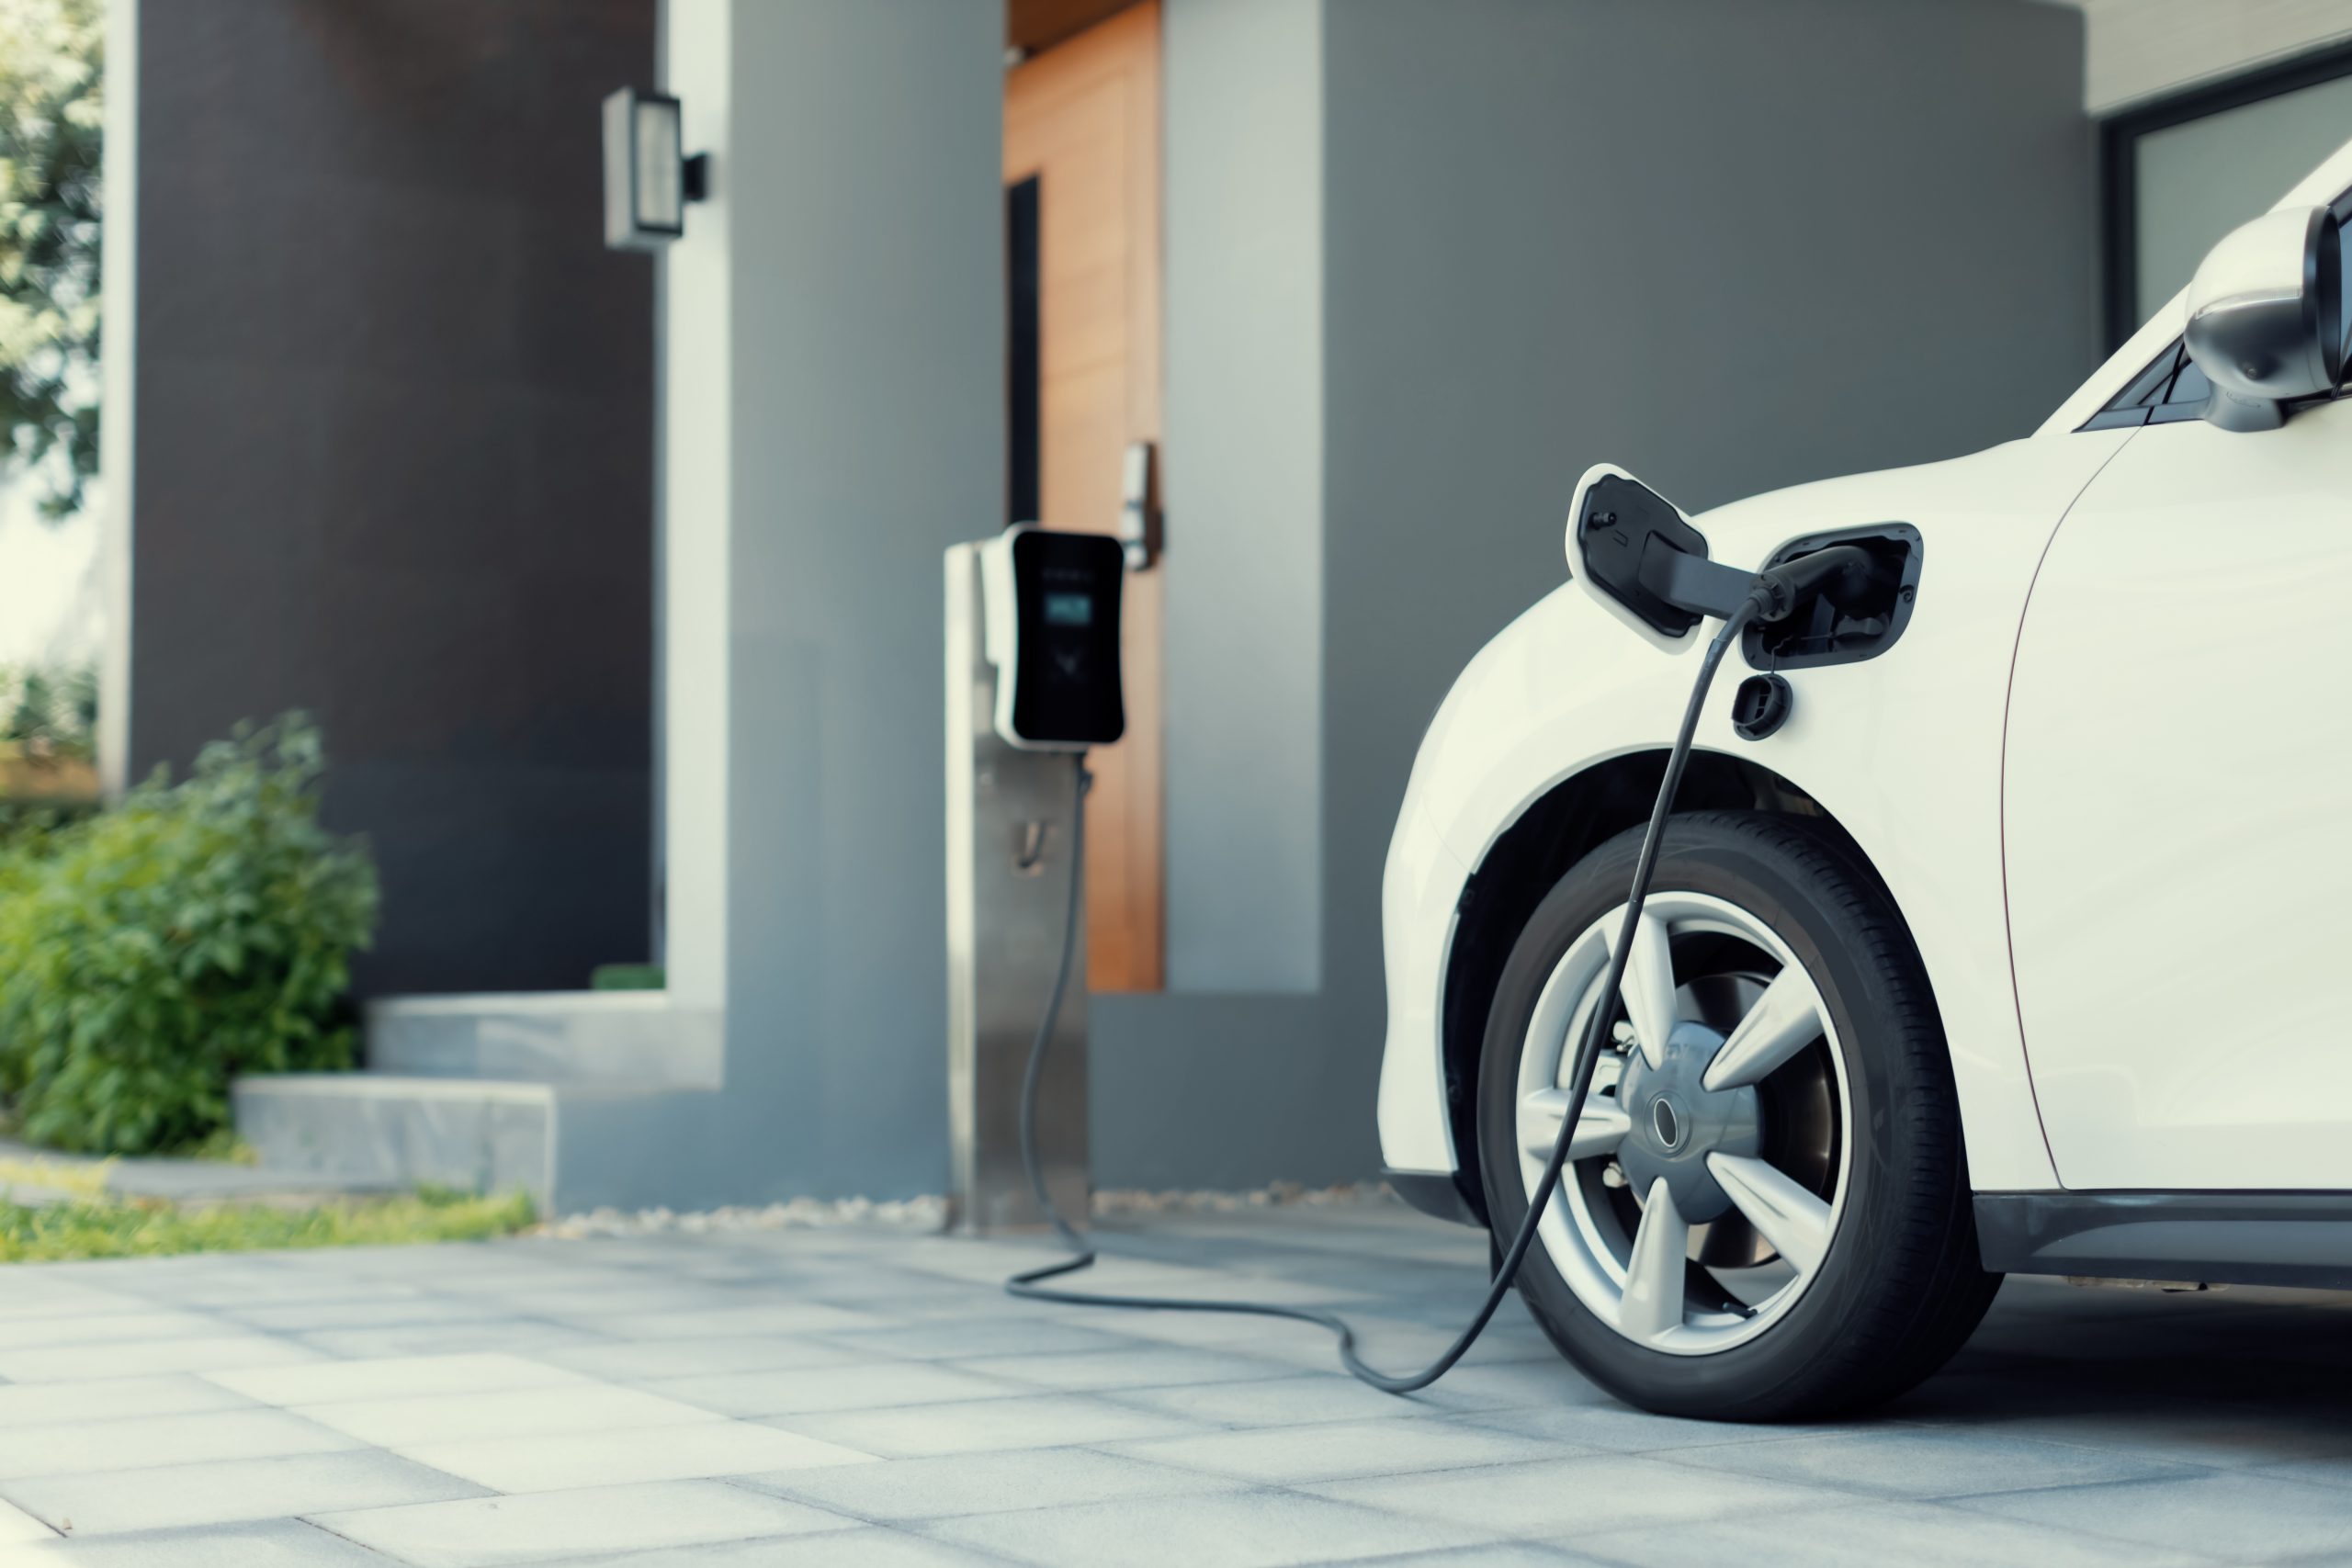 Progresivní koncept nabíjení elektromobilů a domácích nabíjecích stanic poháněných udržitelnou a čistou energií s nulovými emisemi CO2 pro zelené životní prostředí. Nabíjecí bod pro elektromobily v obytné oblasti.